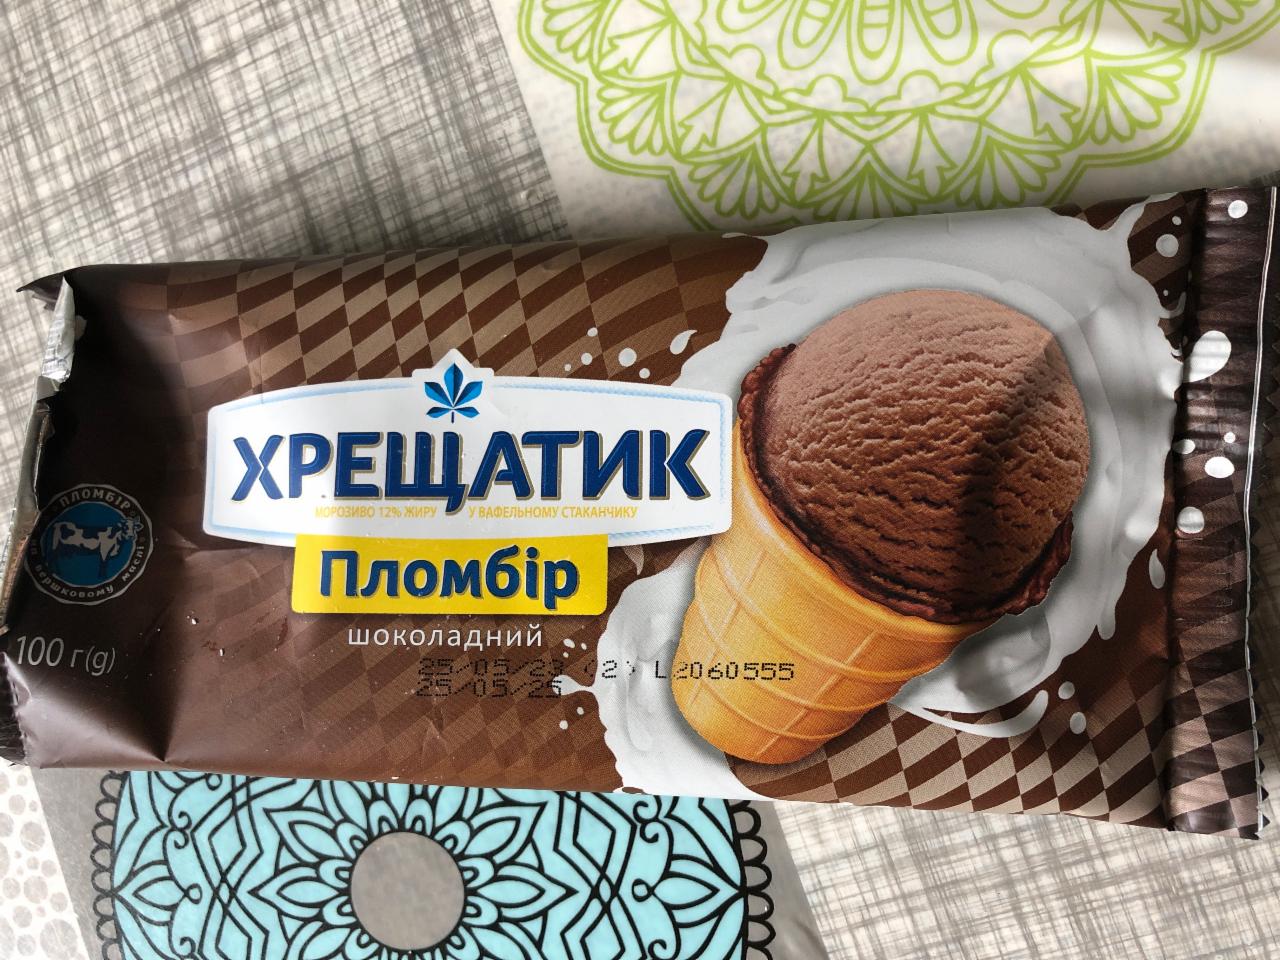 Фото - Мороженое 12% в вафельном стаканчике шоколадный пломбир Хрещатик Хладопром